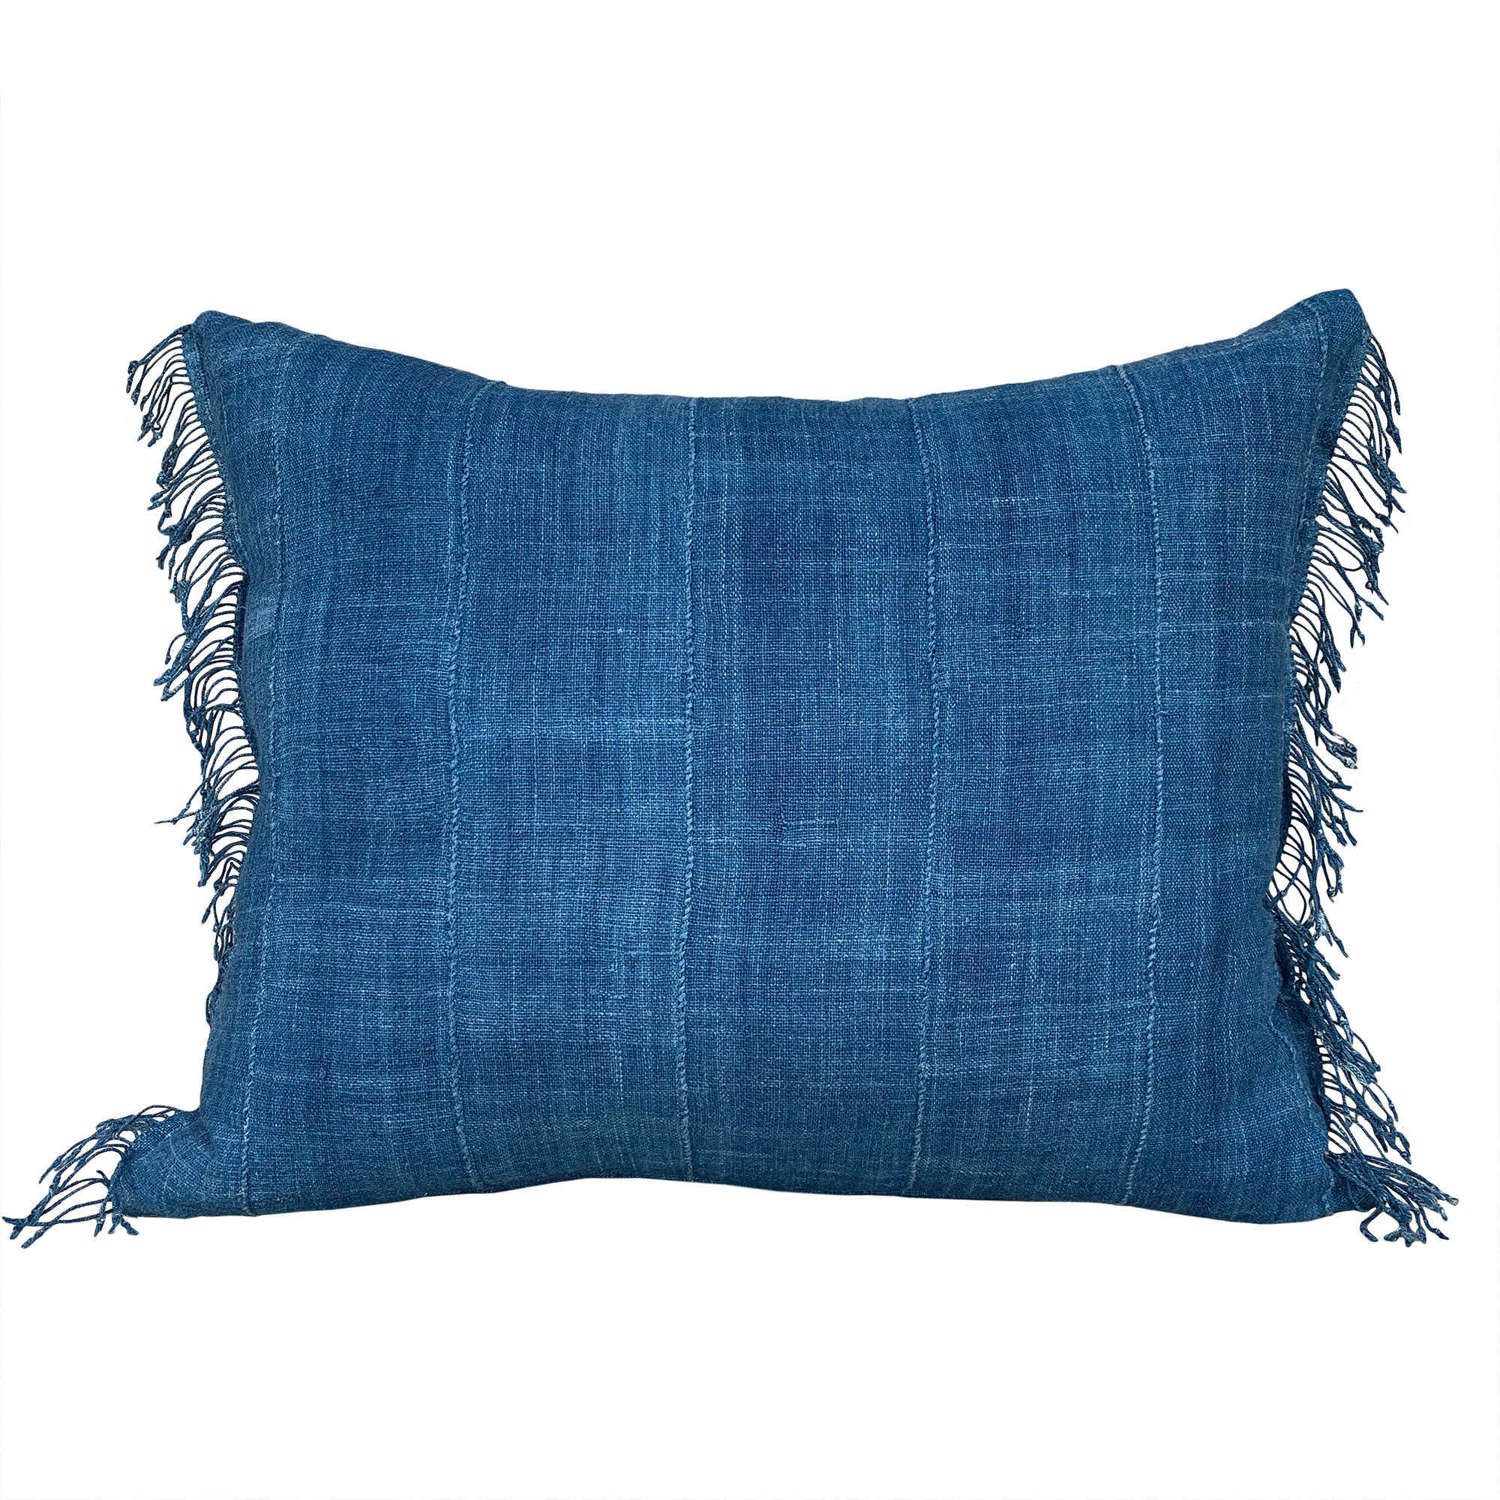 Indigo Mossi cushions with fringed sides